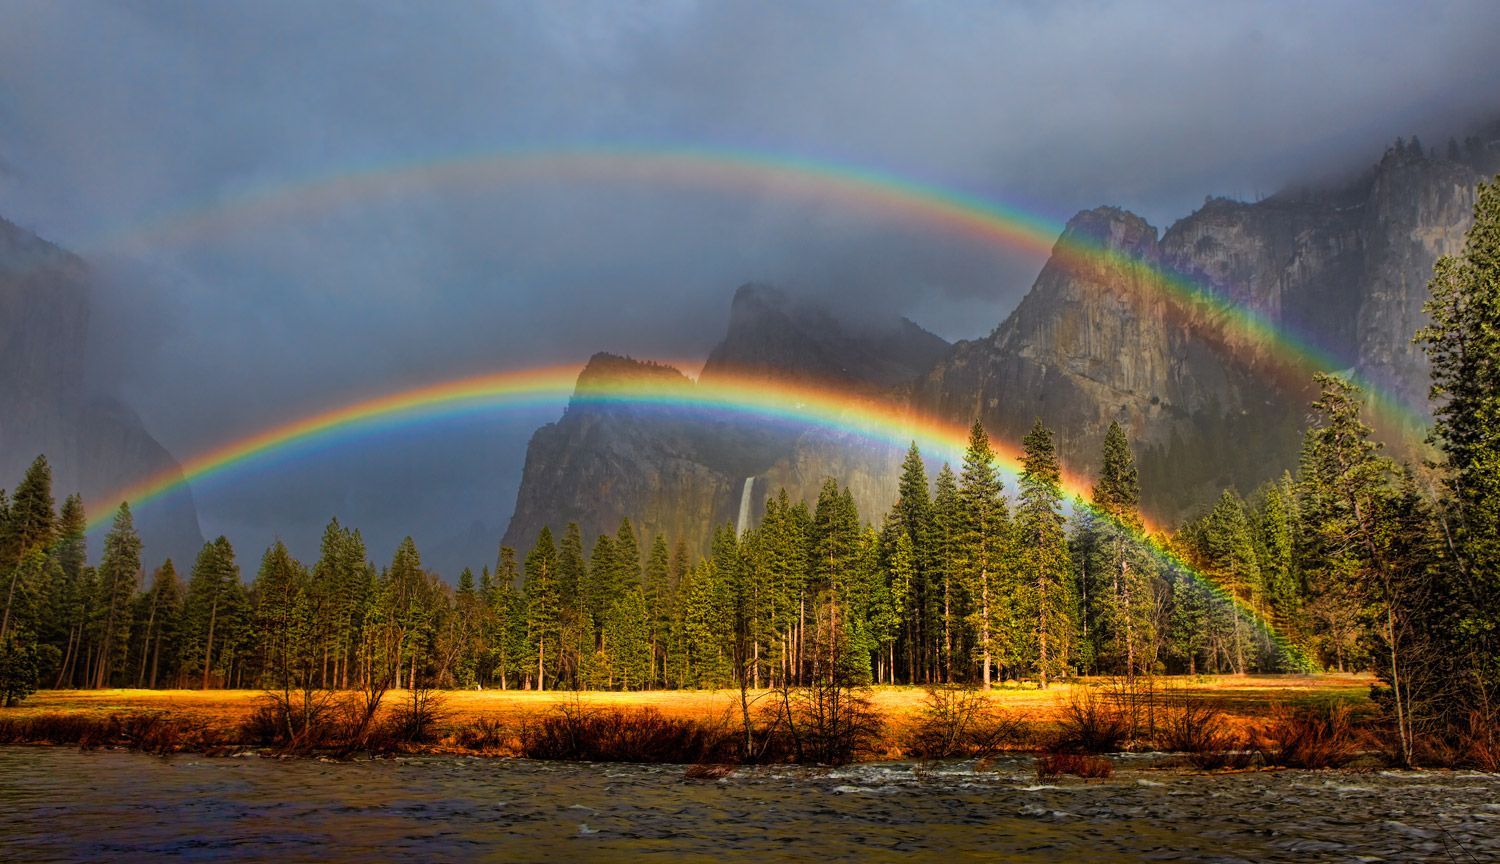 rainbow at yosemite. Nature, Scenery, Beautiful nature